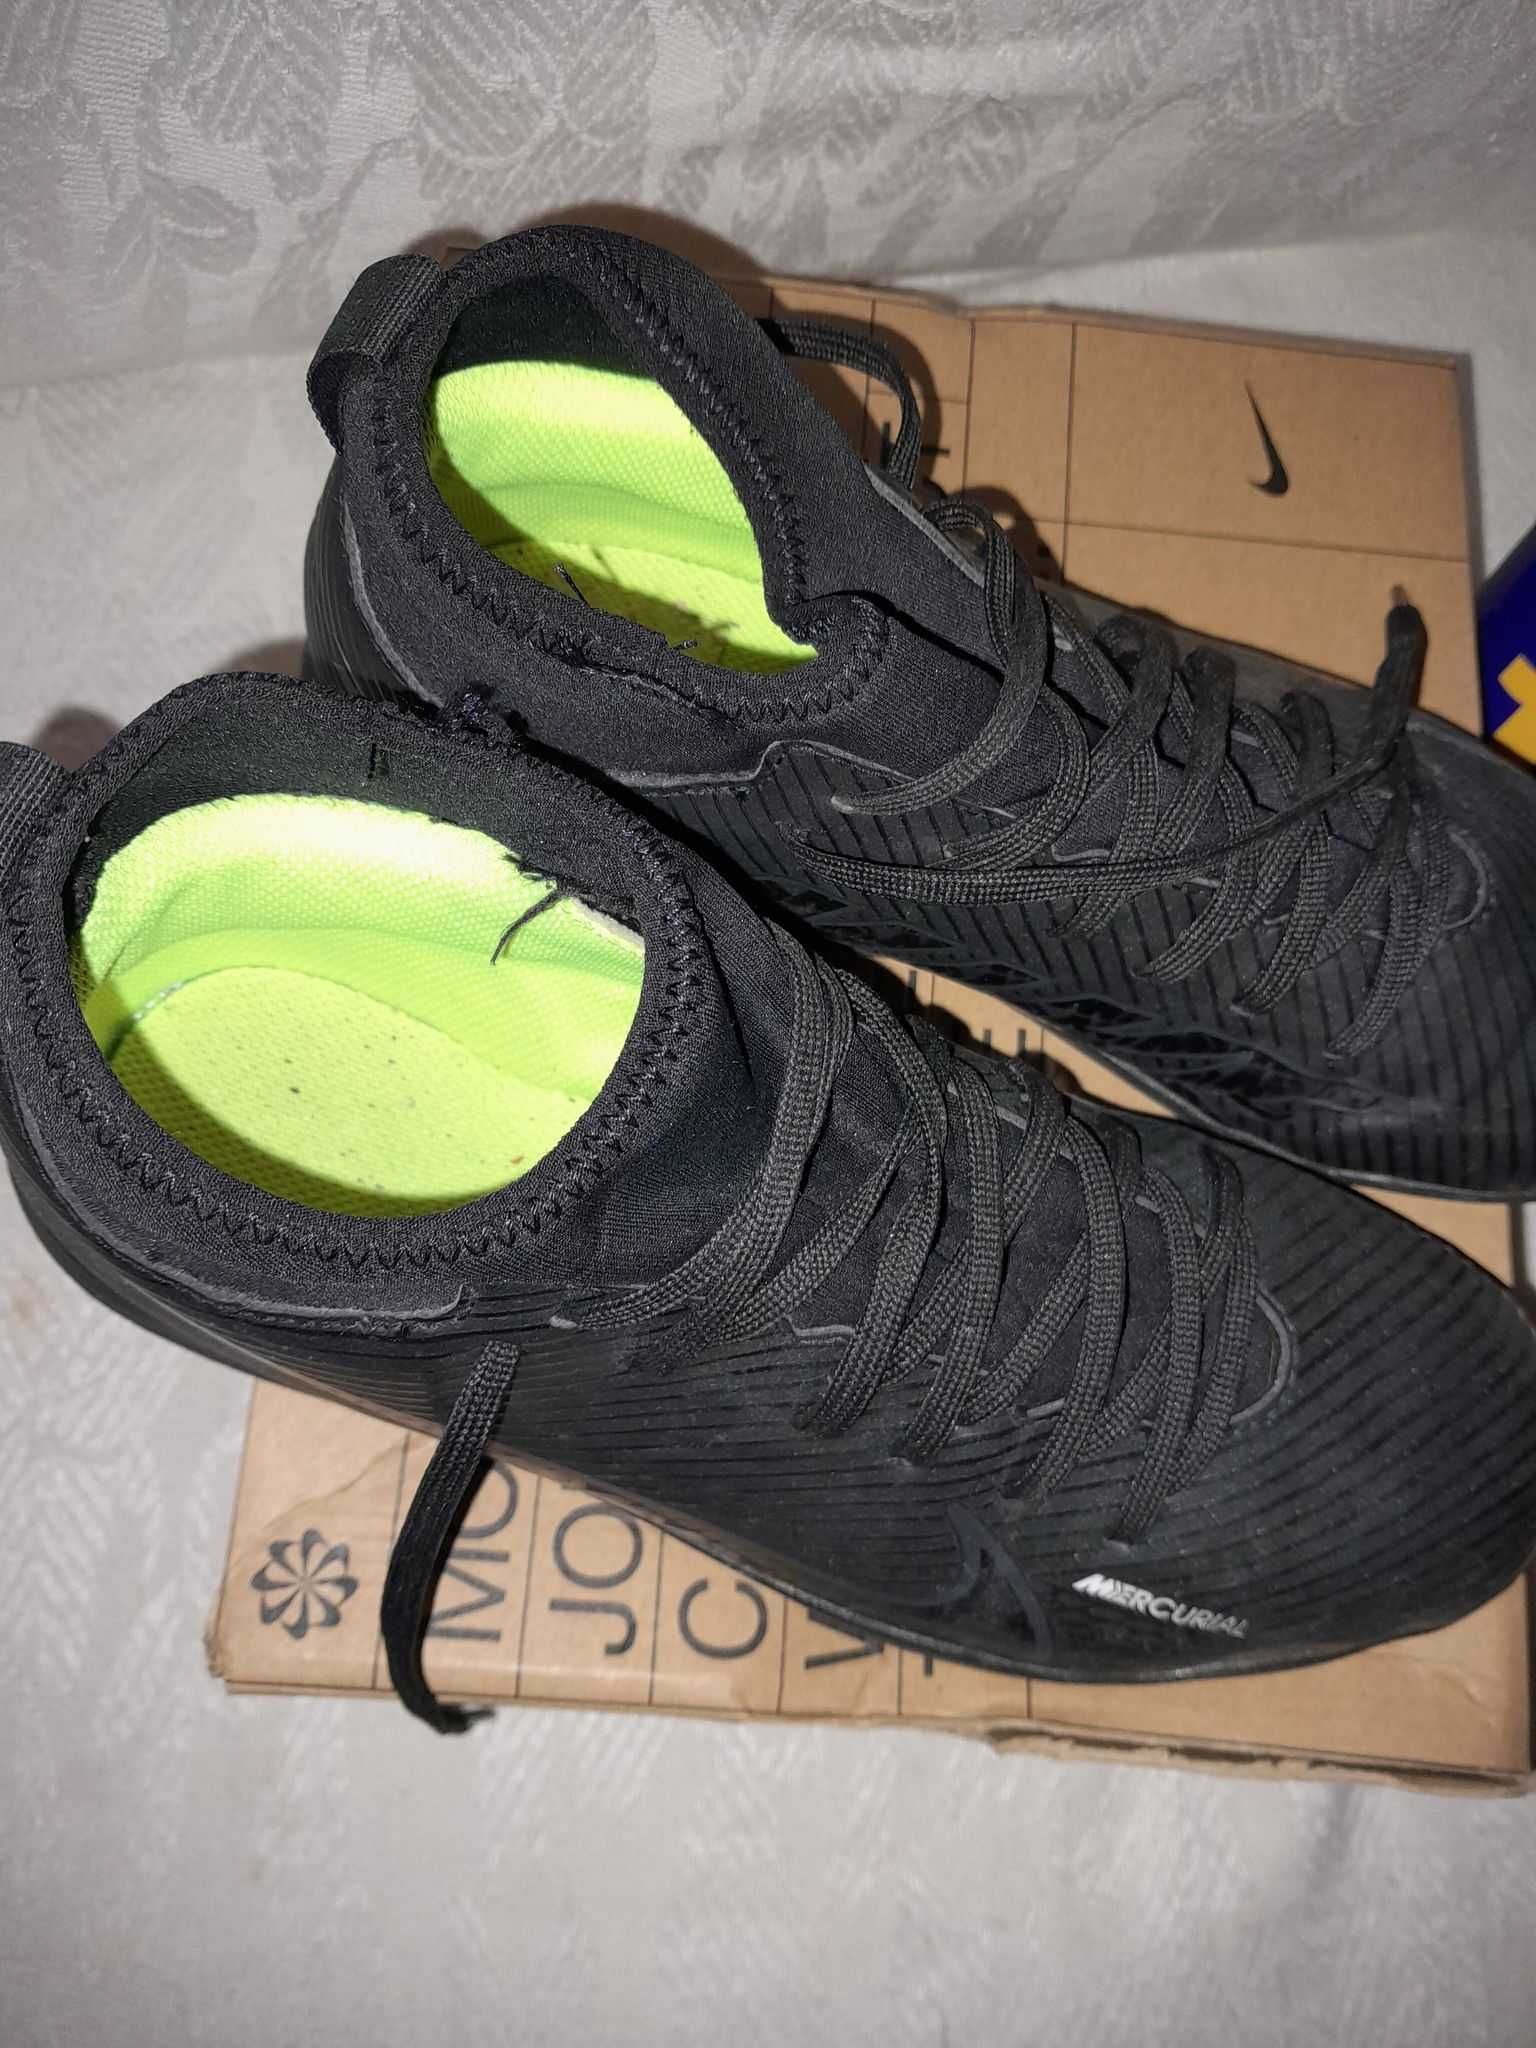 Chuteiras Nike Mercurial VP bota para relvado sintético , tamanho 38,5